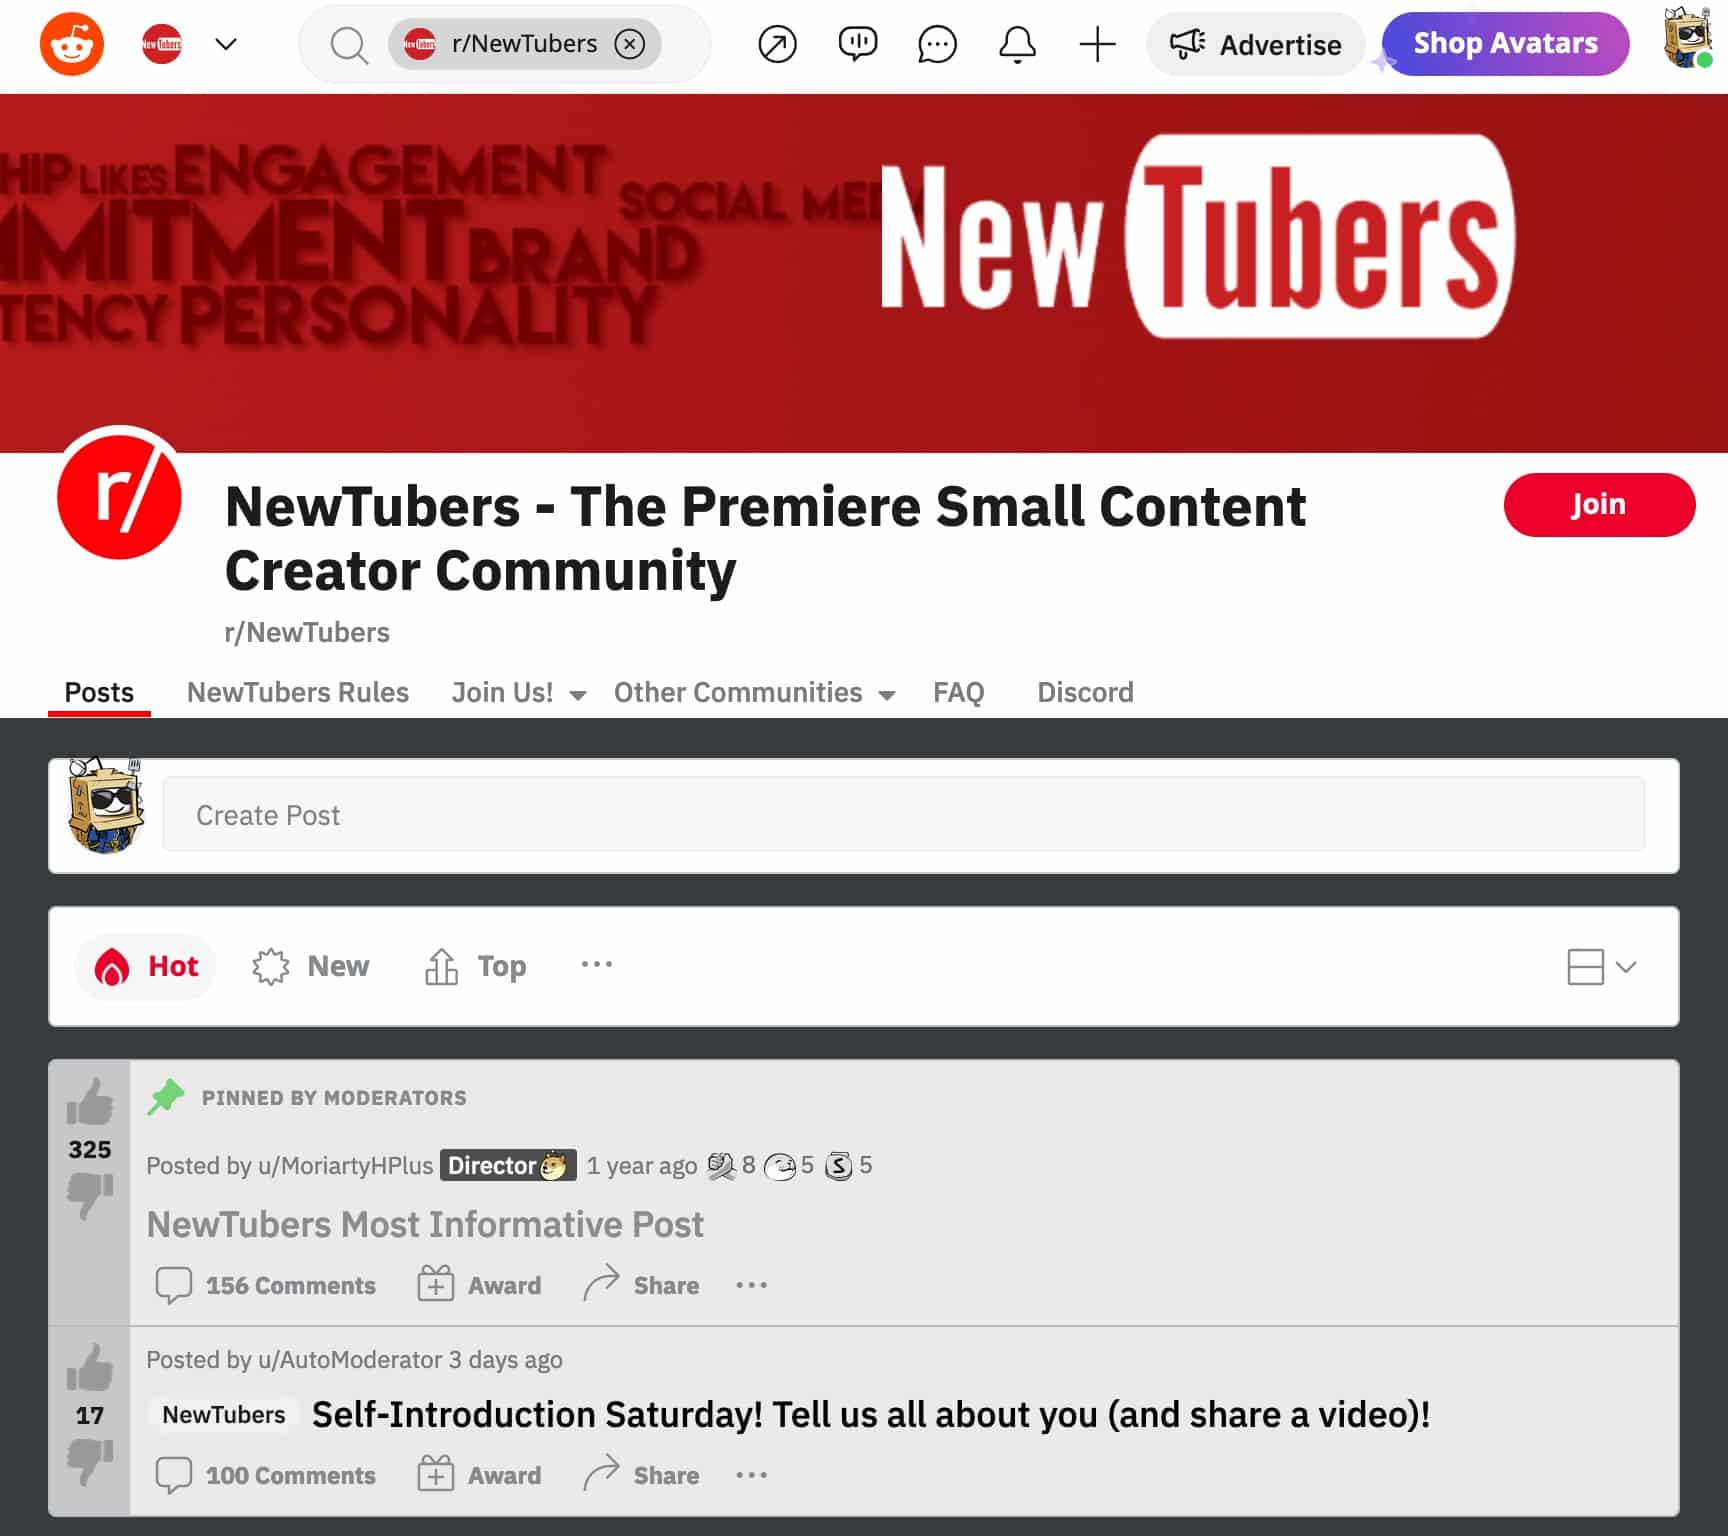 NewTubers the premiere small content creator community